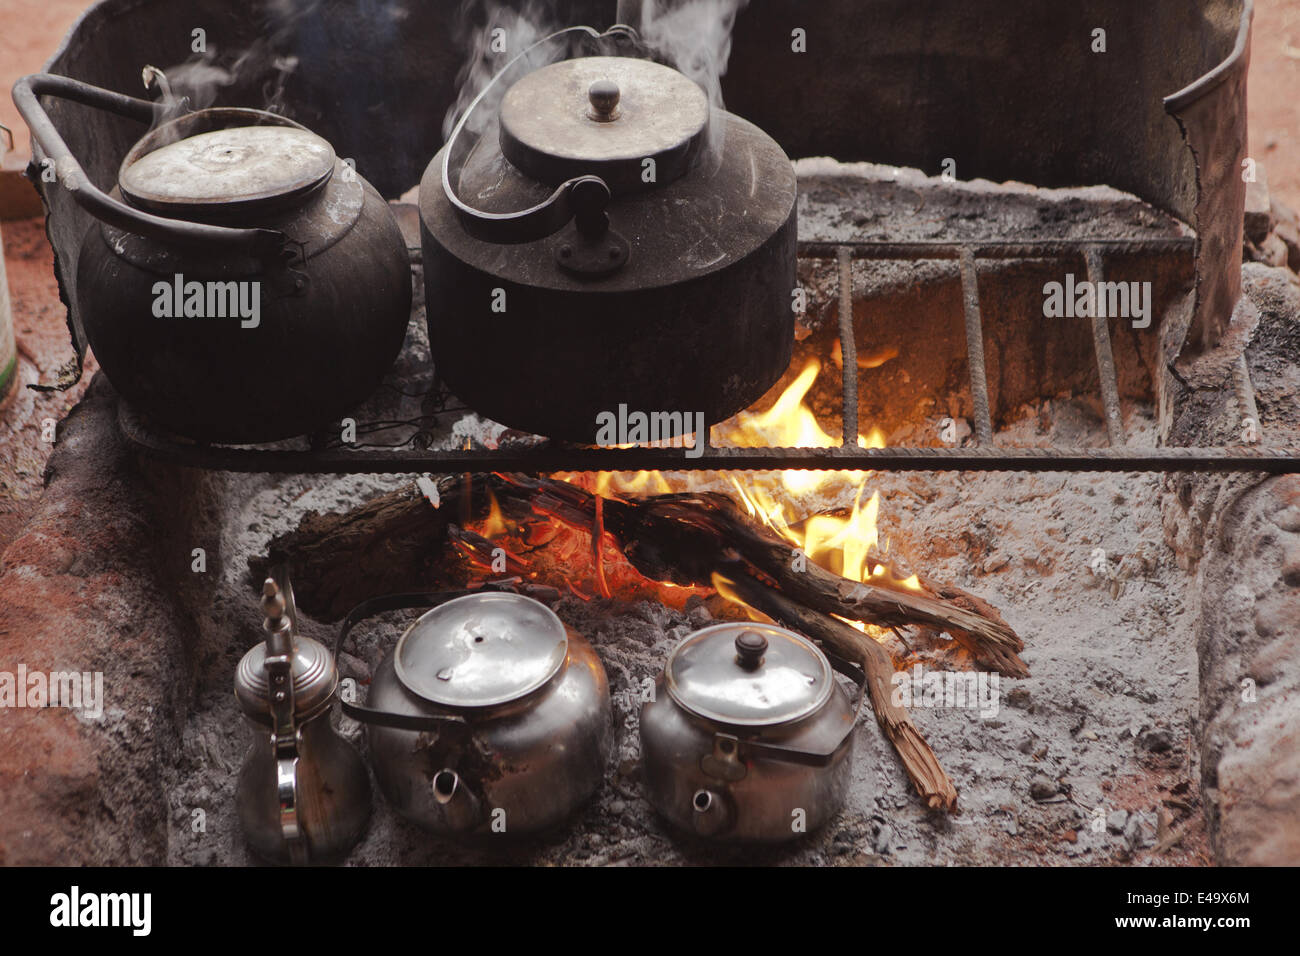 Tea pot on campfire, Jordan Stock Photo